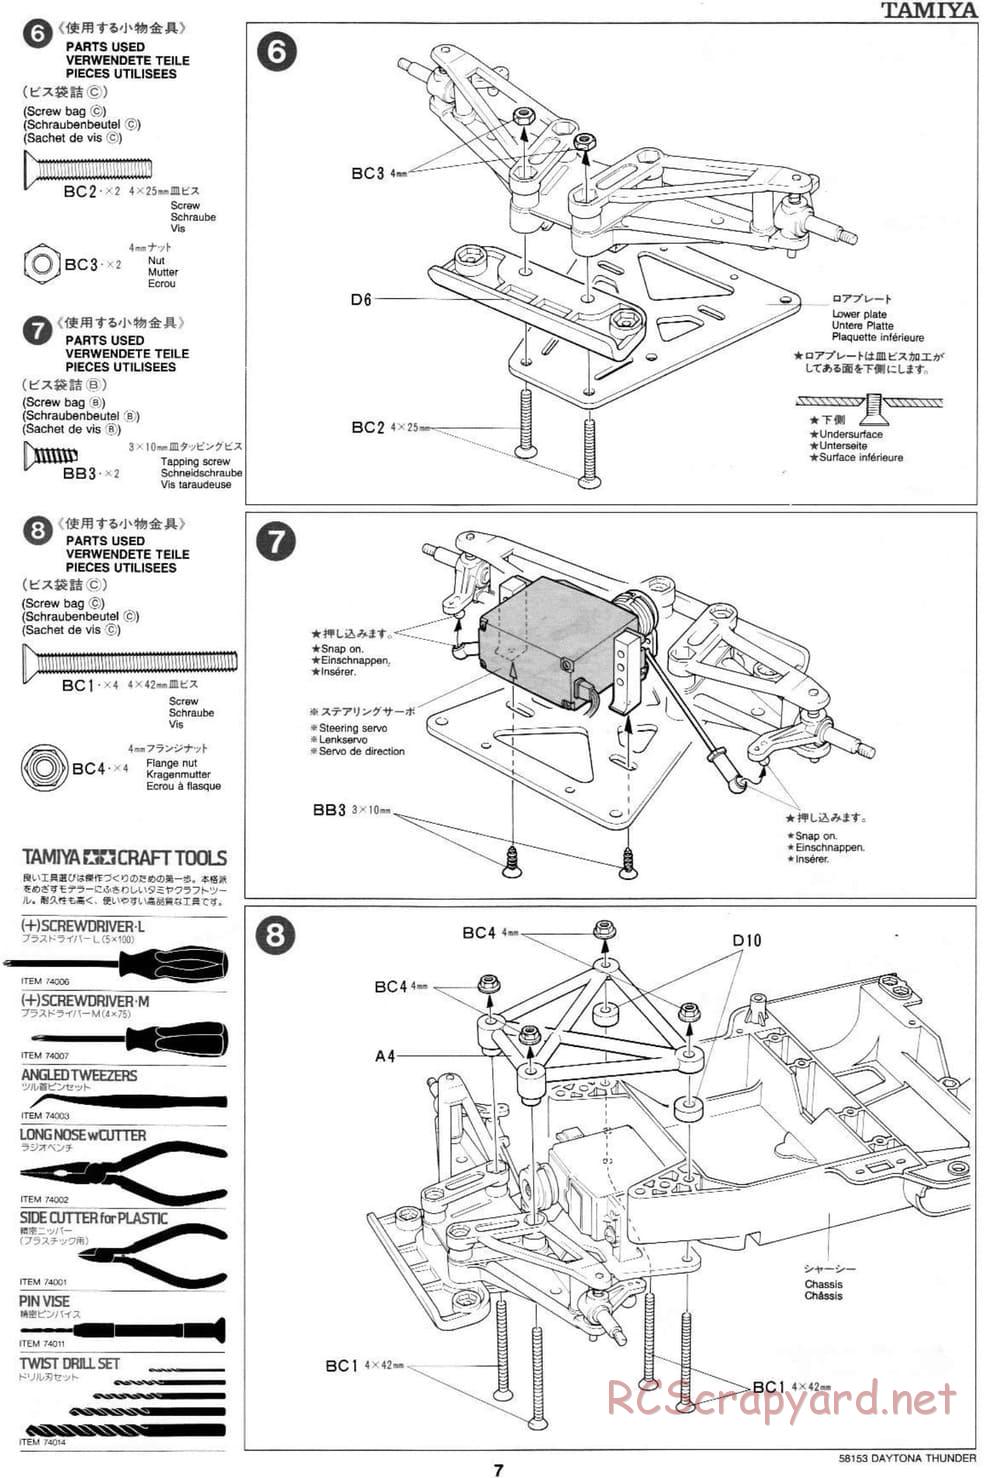 Tamiya - Daytona Thunder - Group-C Chassis - Manual - Page 7